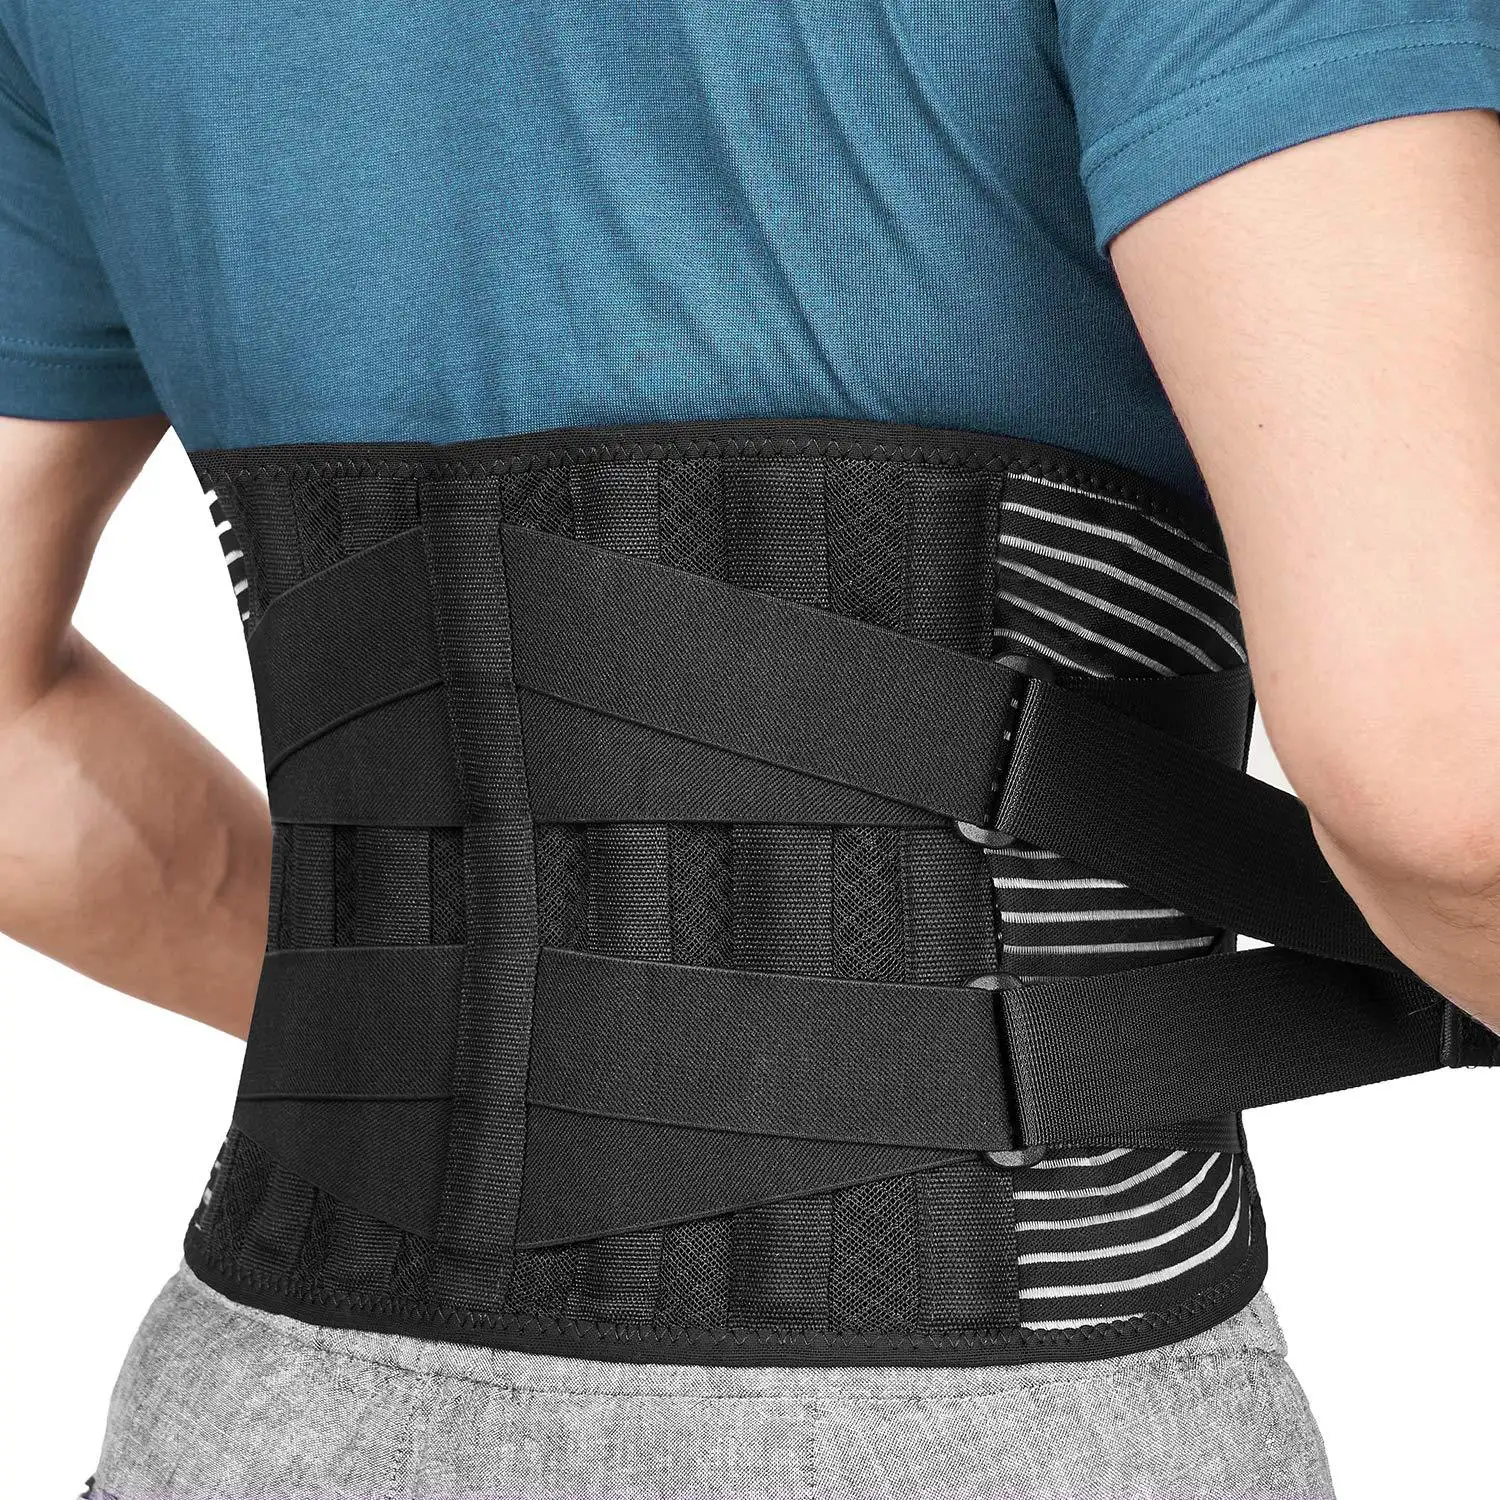 Missky — ceinture de soutien lombaire personnalisée, pour le bas du dos, soulagement des douleurs dorsales, pour hommes et femmes